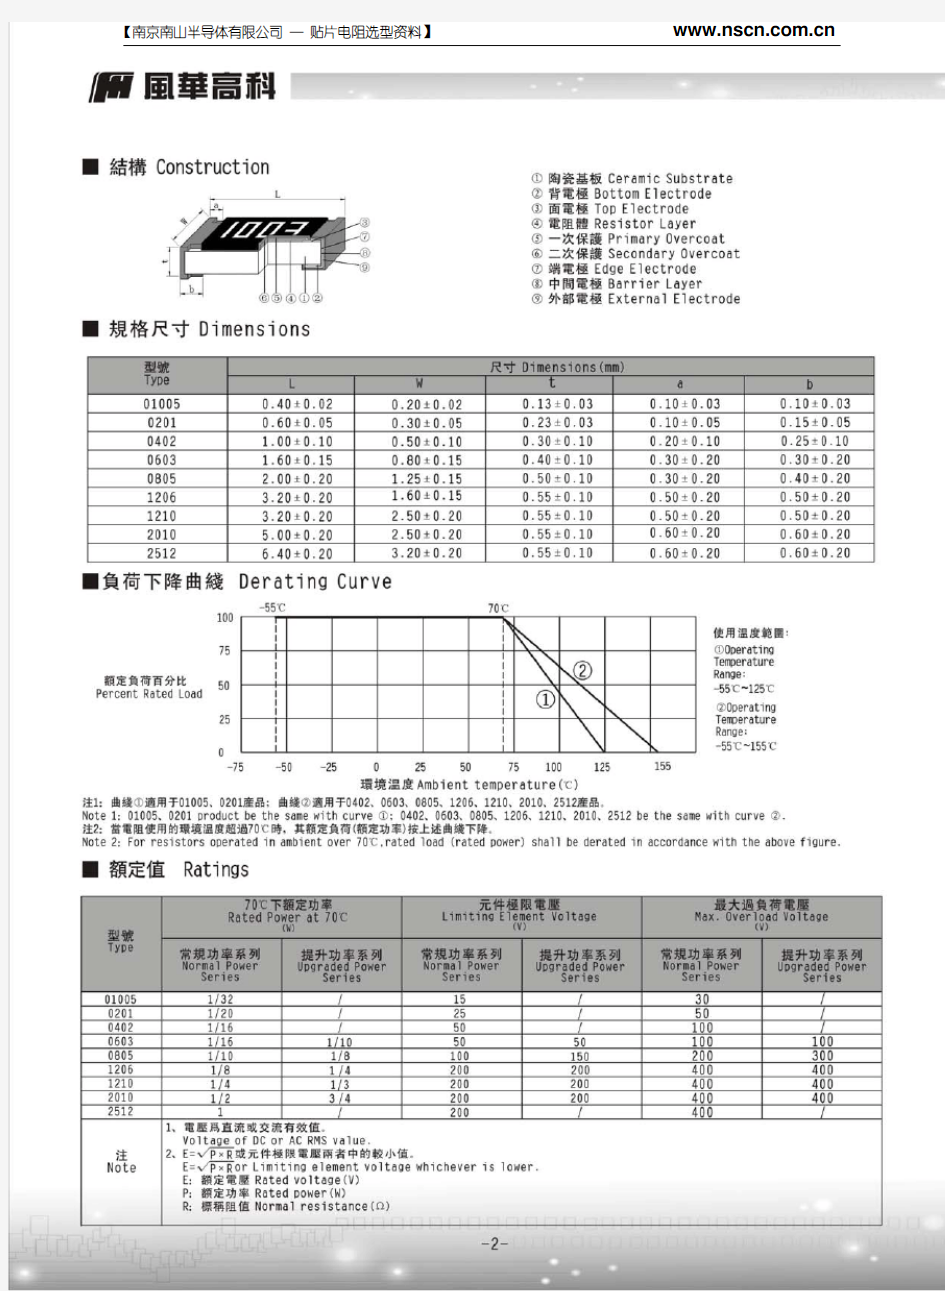 风华高科厚膜贴片电阻规格书(201304新版)